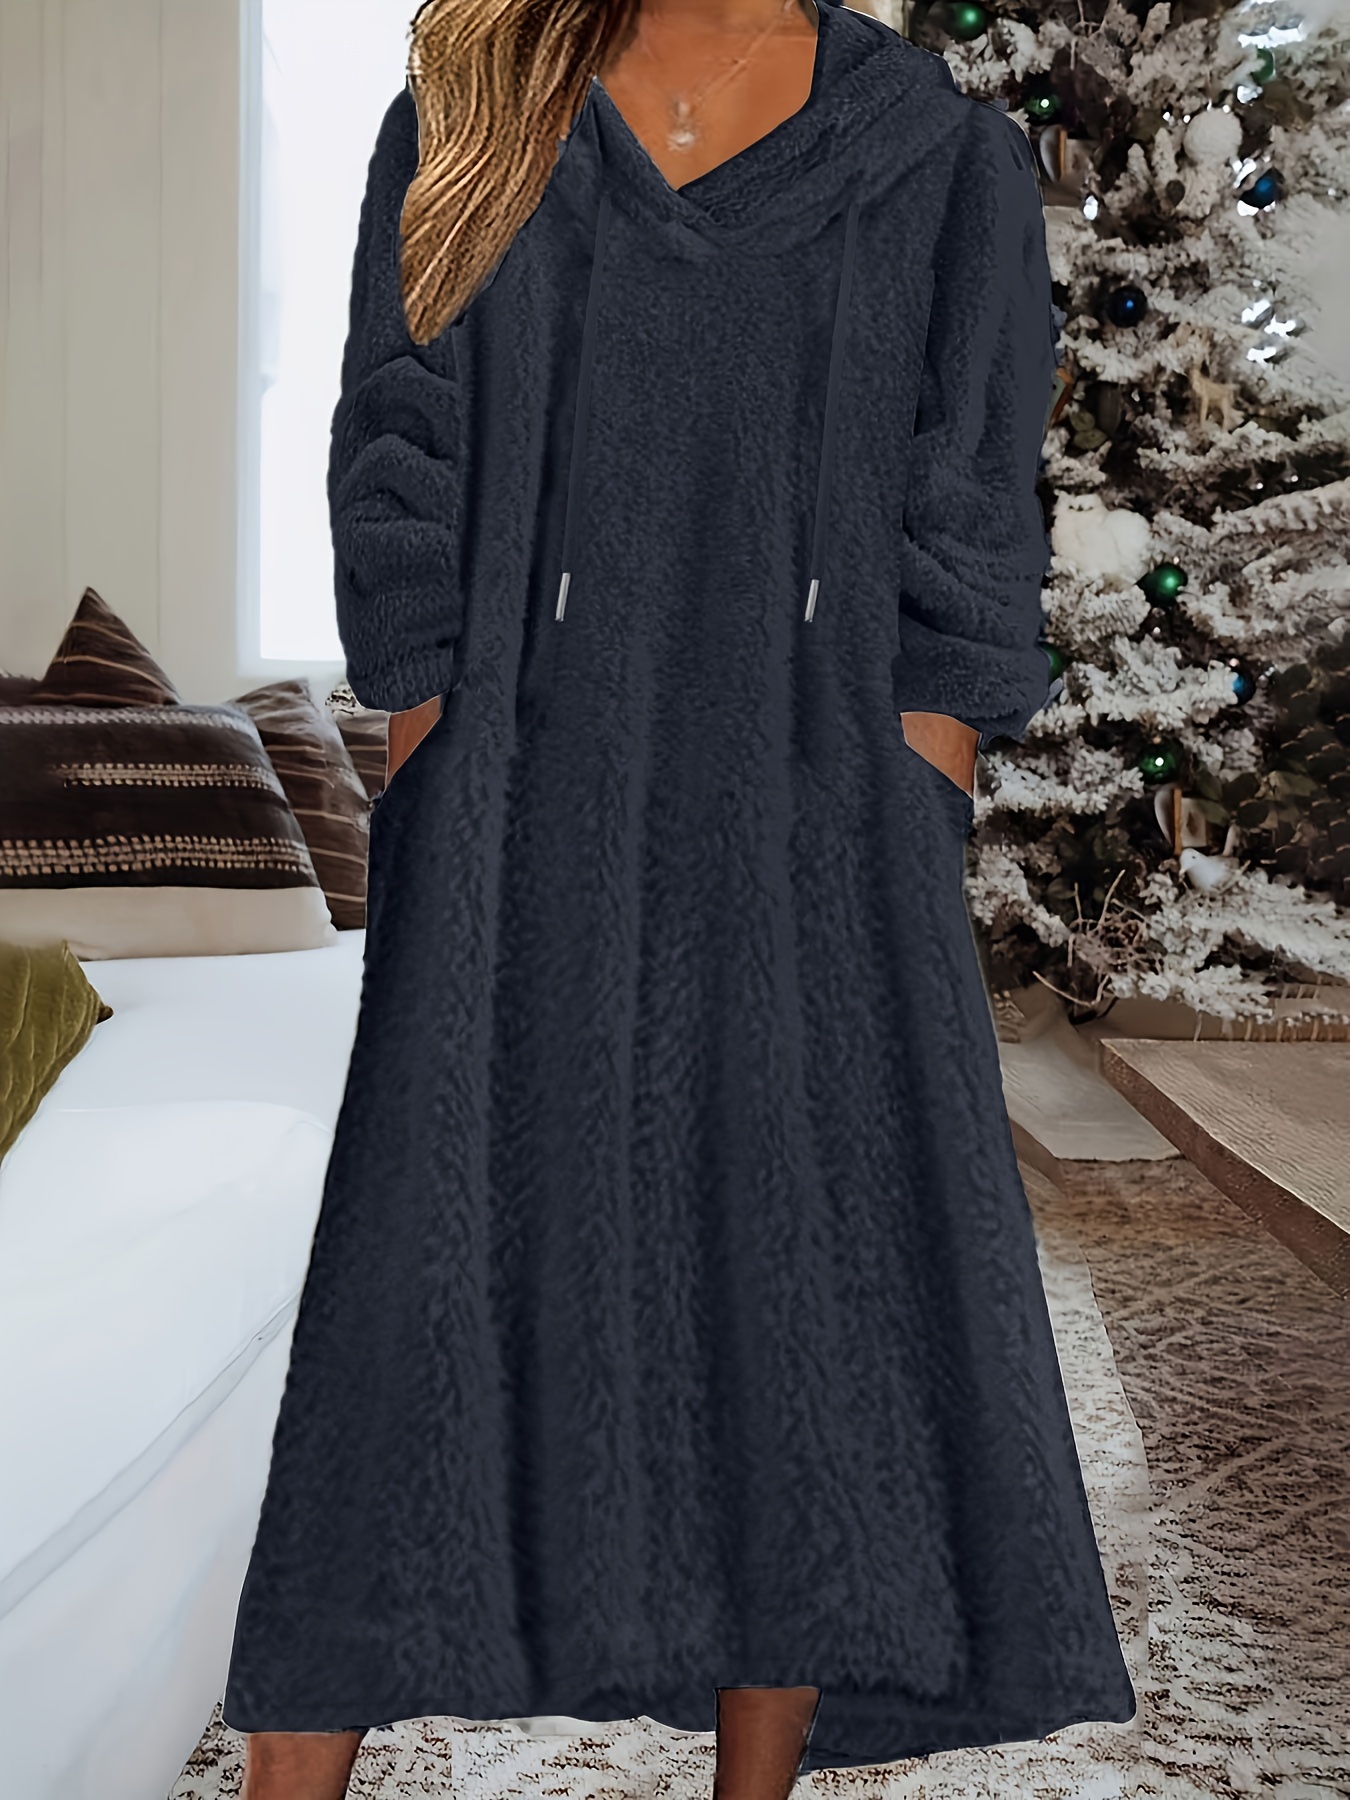  Plus Size Dresses for Women Fall Winter Dress Fleece